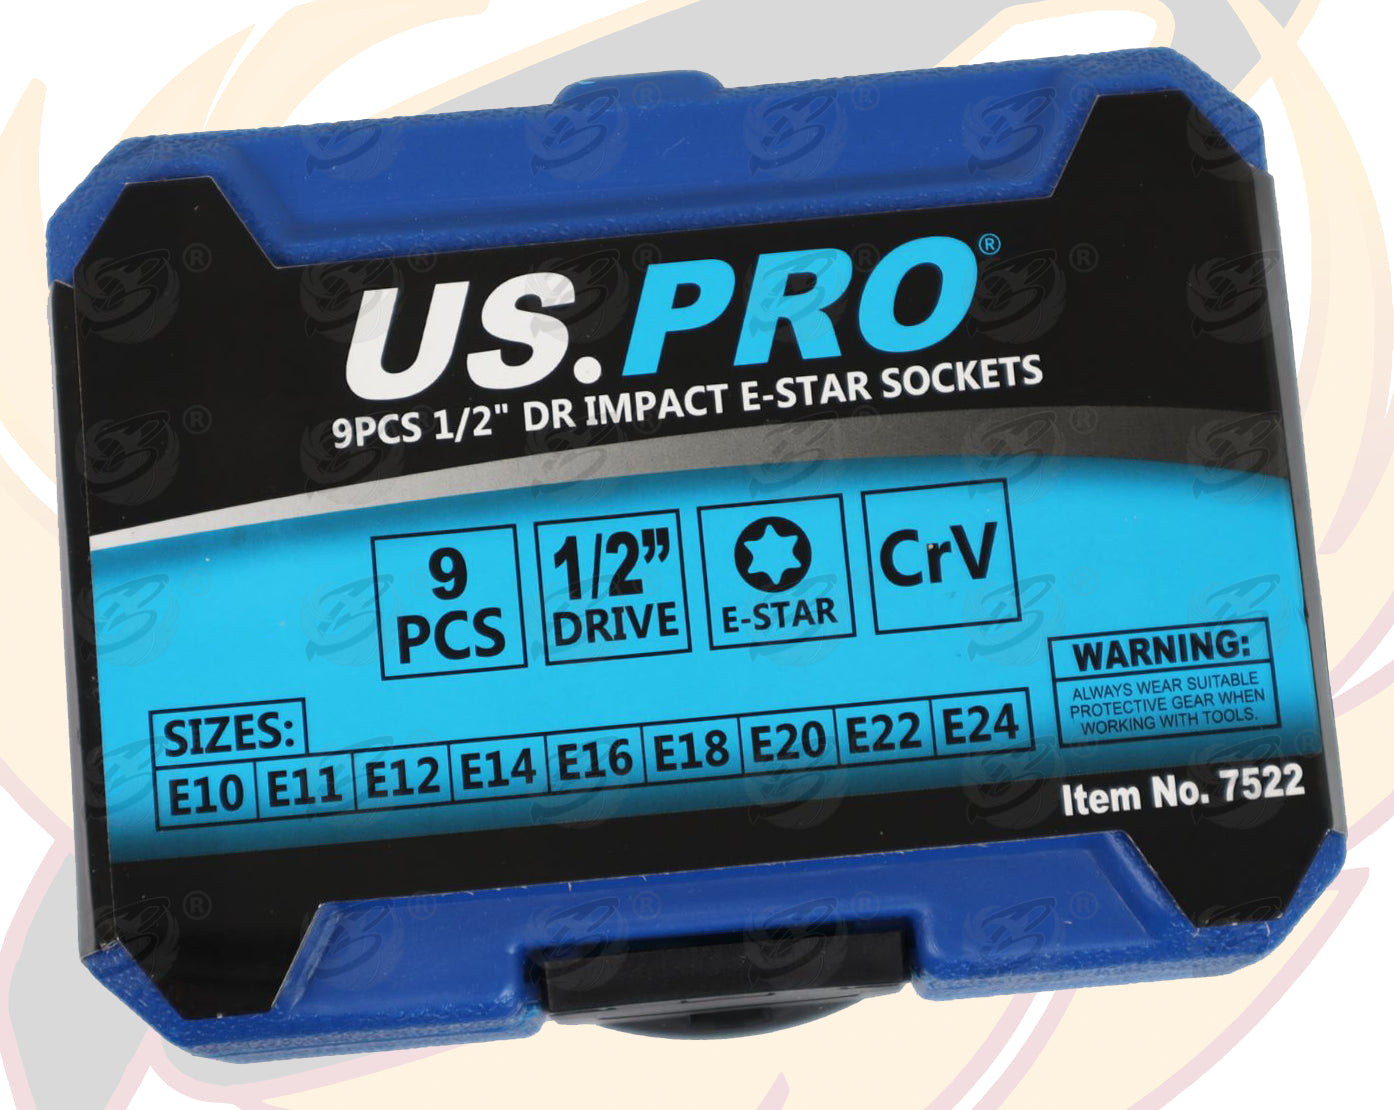 US PRO 9PCS 1/2" DR IMPACT E - TORX SOCKETS E10 - E24